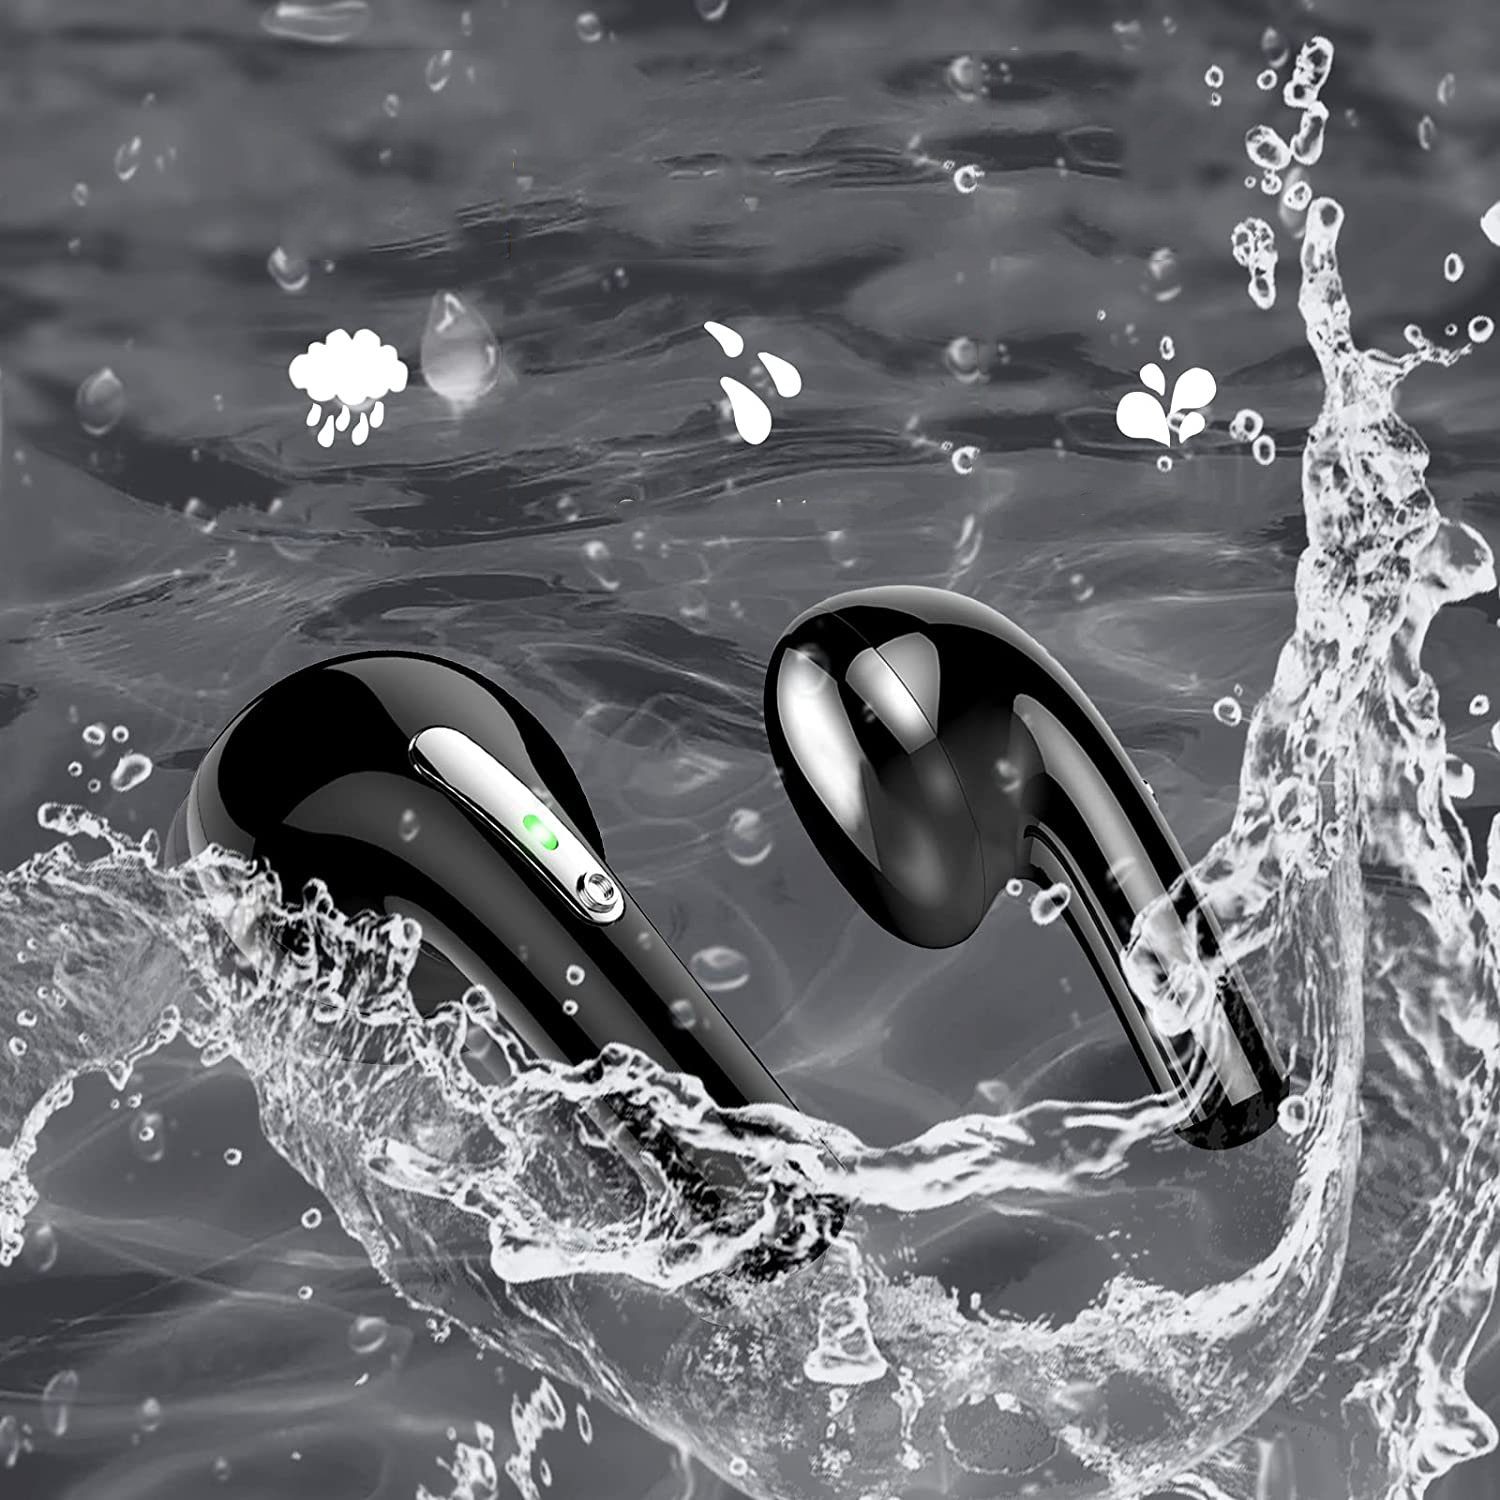 Stereo wireless Bluetooth Wasserdicht In-Ear-Kopfhörer Ear In HiFi Ohrhörer Bluetooth (mit NEIN, LED Kabellos Mikrofon für Kopfhörer, Sport Bedee mit Bluetooth, Anzeige, Arbeit) 5.2